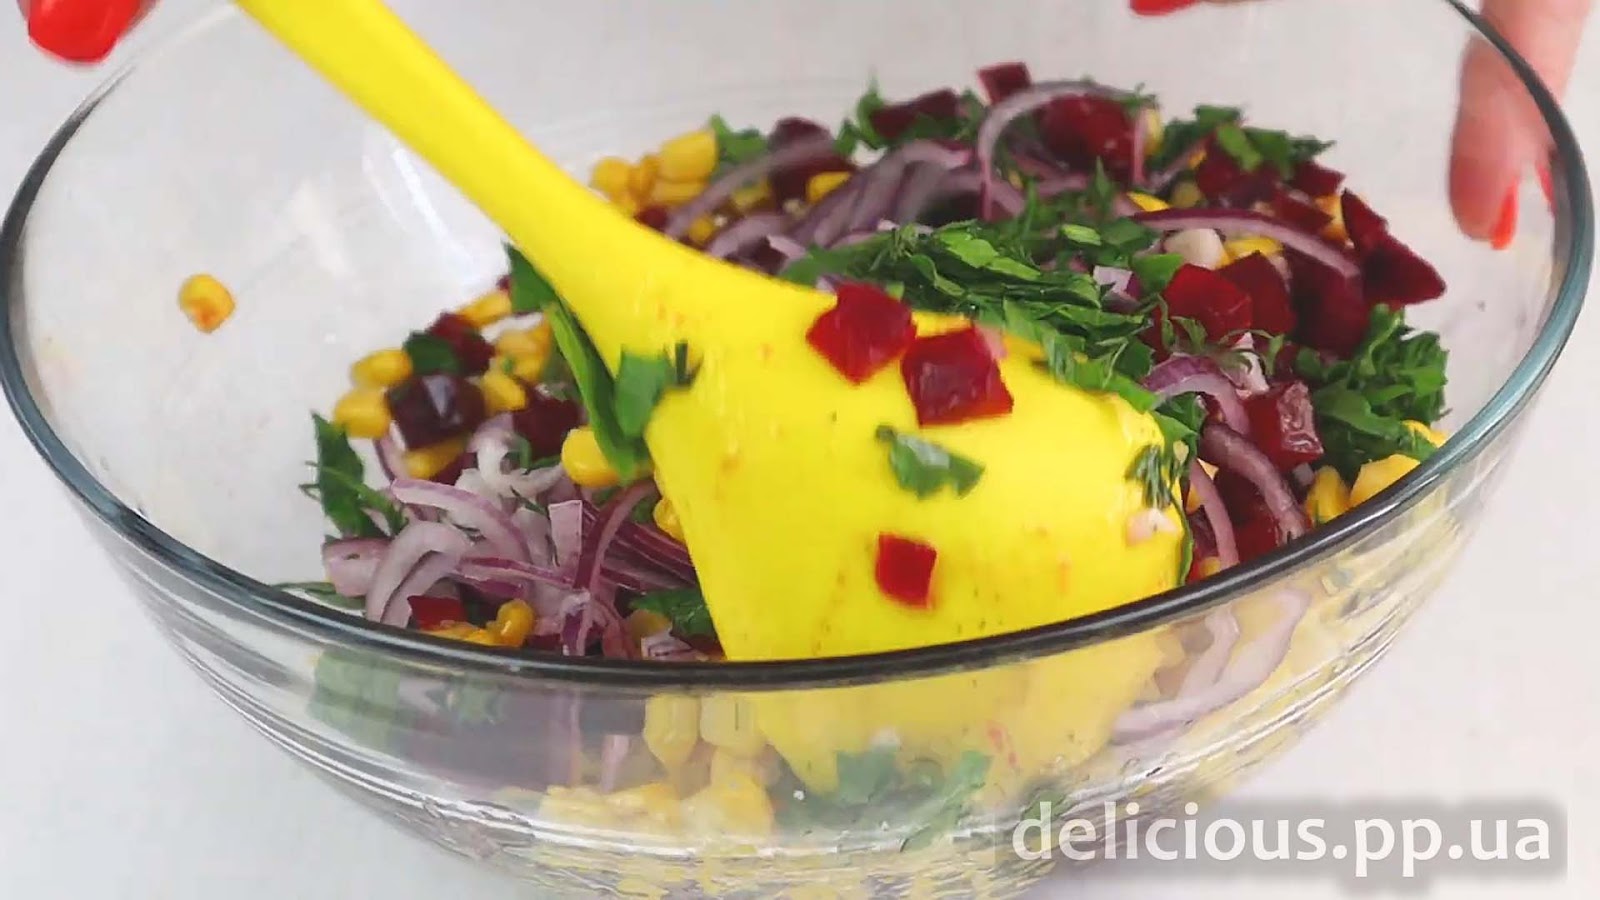 Фото приготовления рецепта: «Легкий салат из свеклы с консервированной кукурузой» - шаг №5